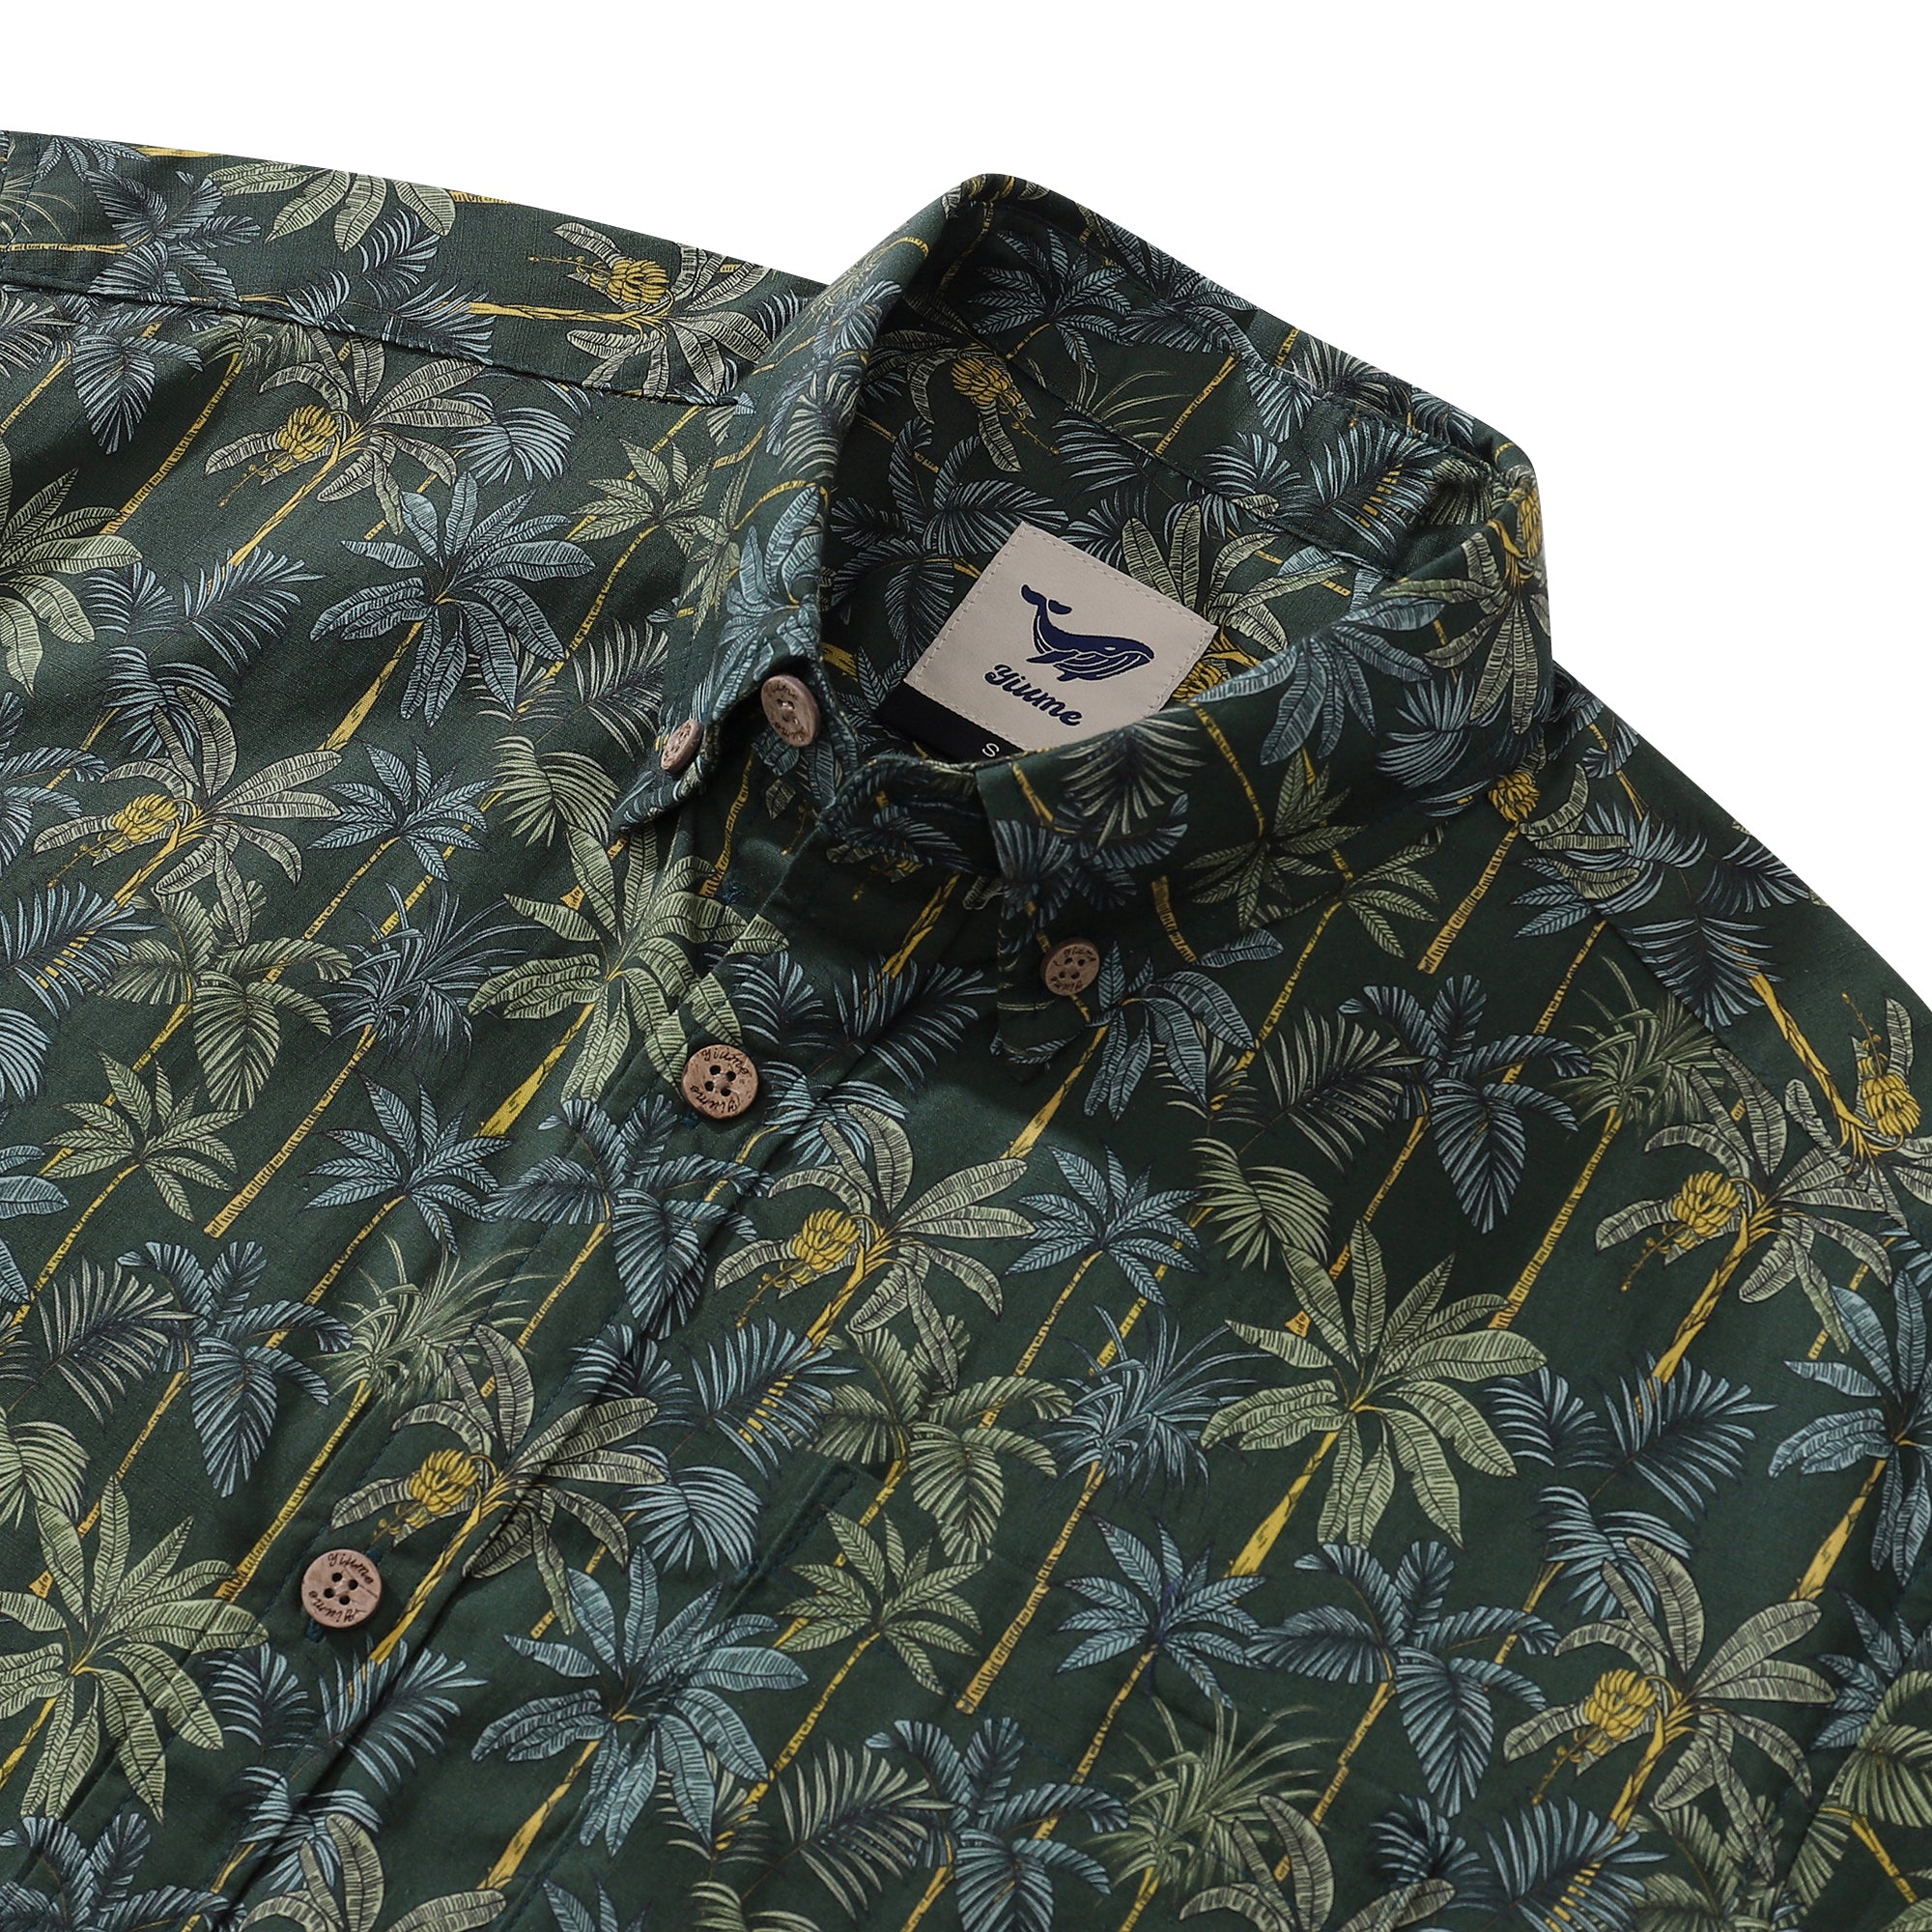 1950s Tropical Hawaiian Shirt For Men Rainforest Print Cotton Button D ...